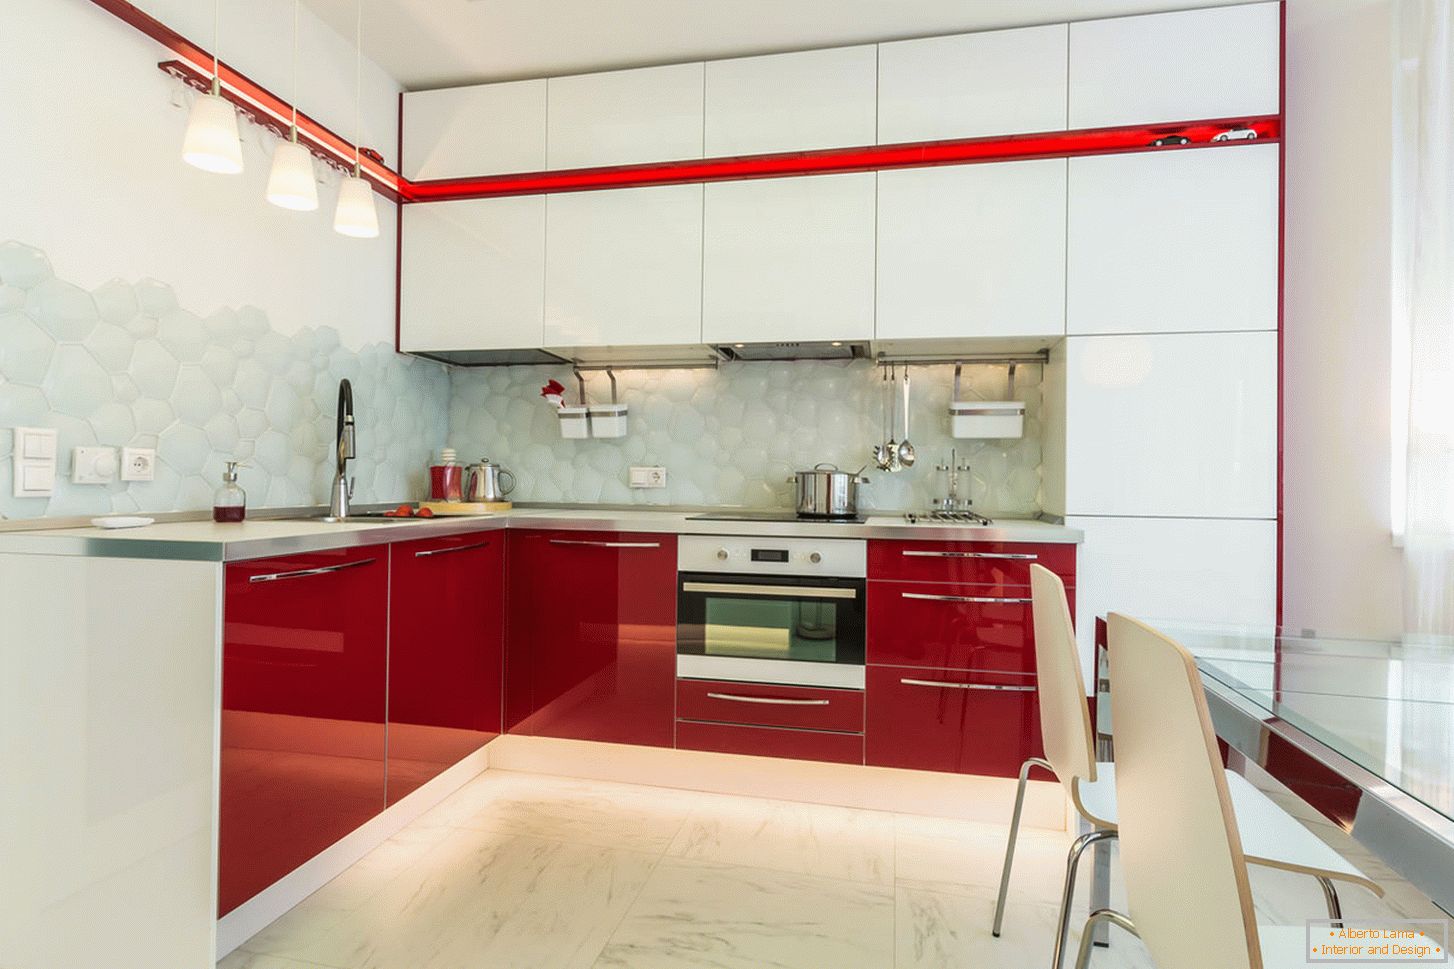 Slikana kuhinja interijera u bijeloj i crvenoj boji